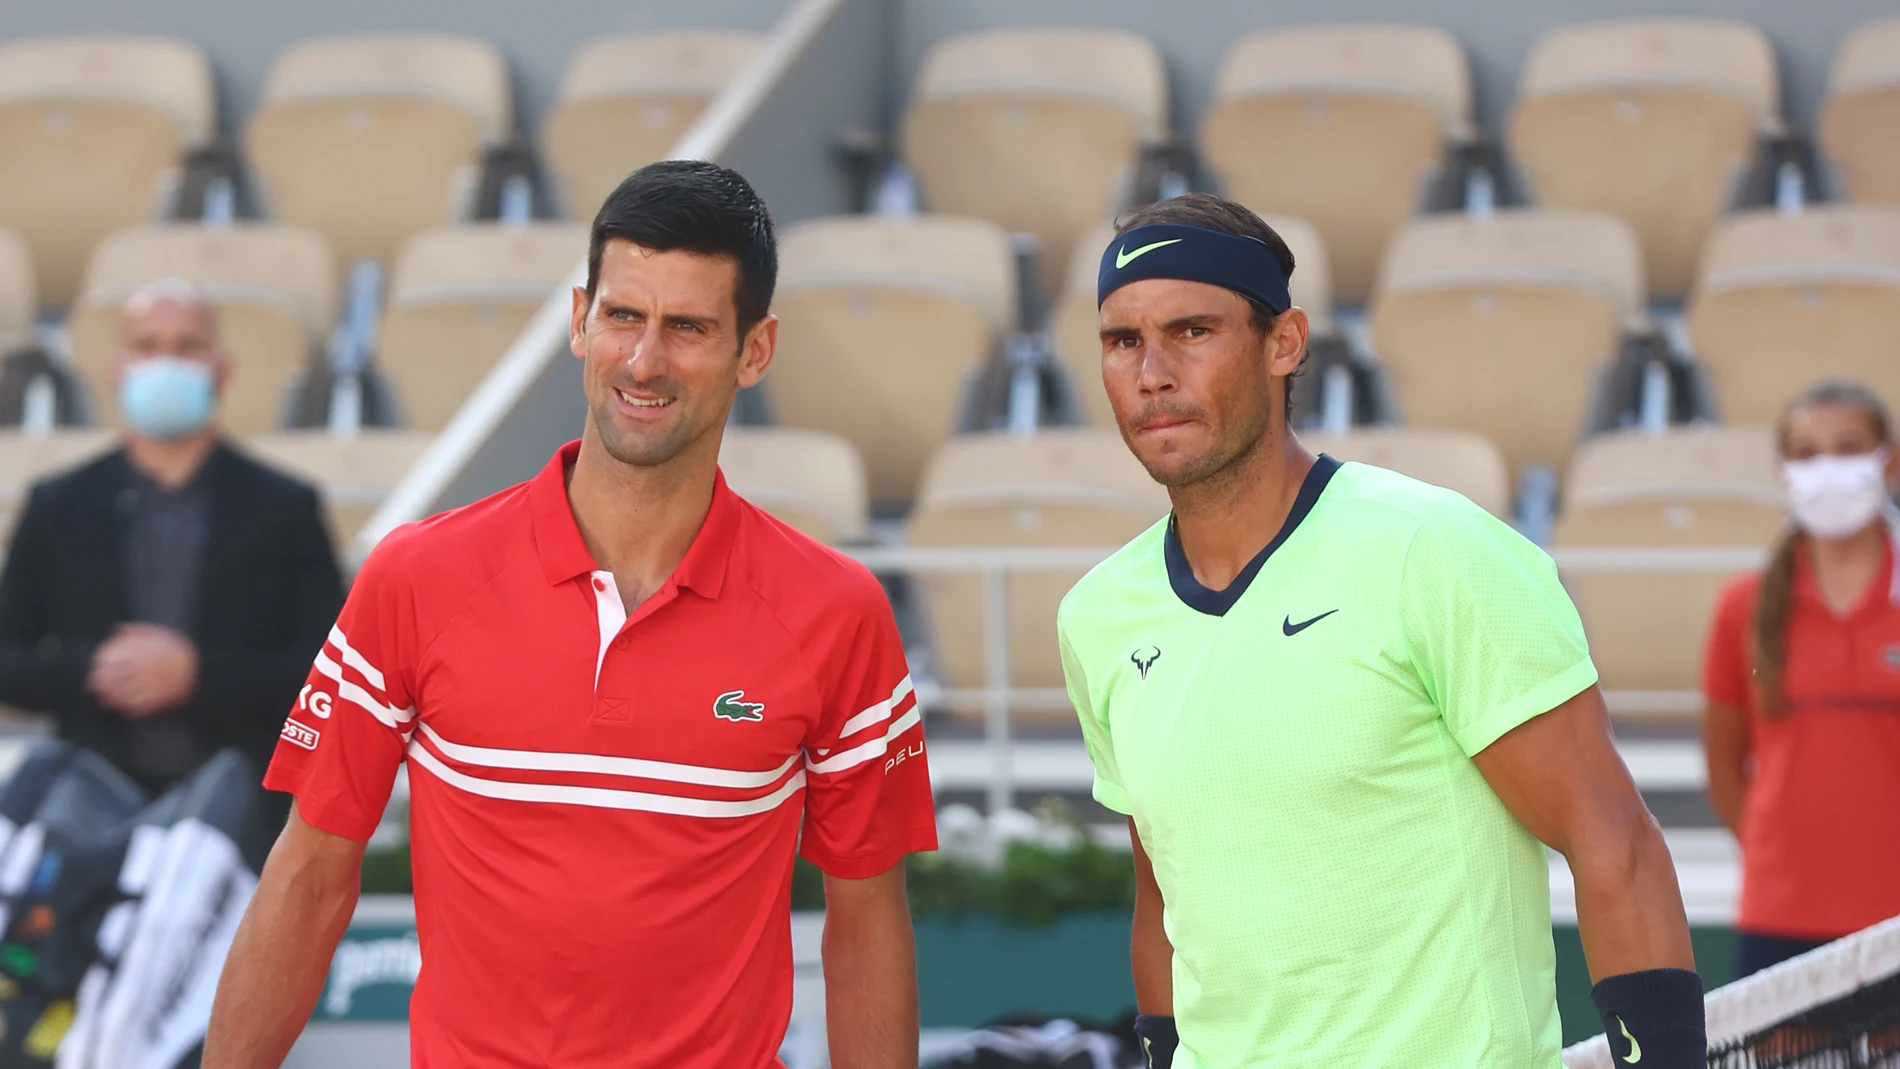 El duro camino Nadal en Open de Australia: solo se verá Djokovic en una hipotética final